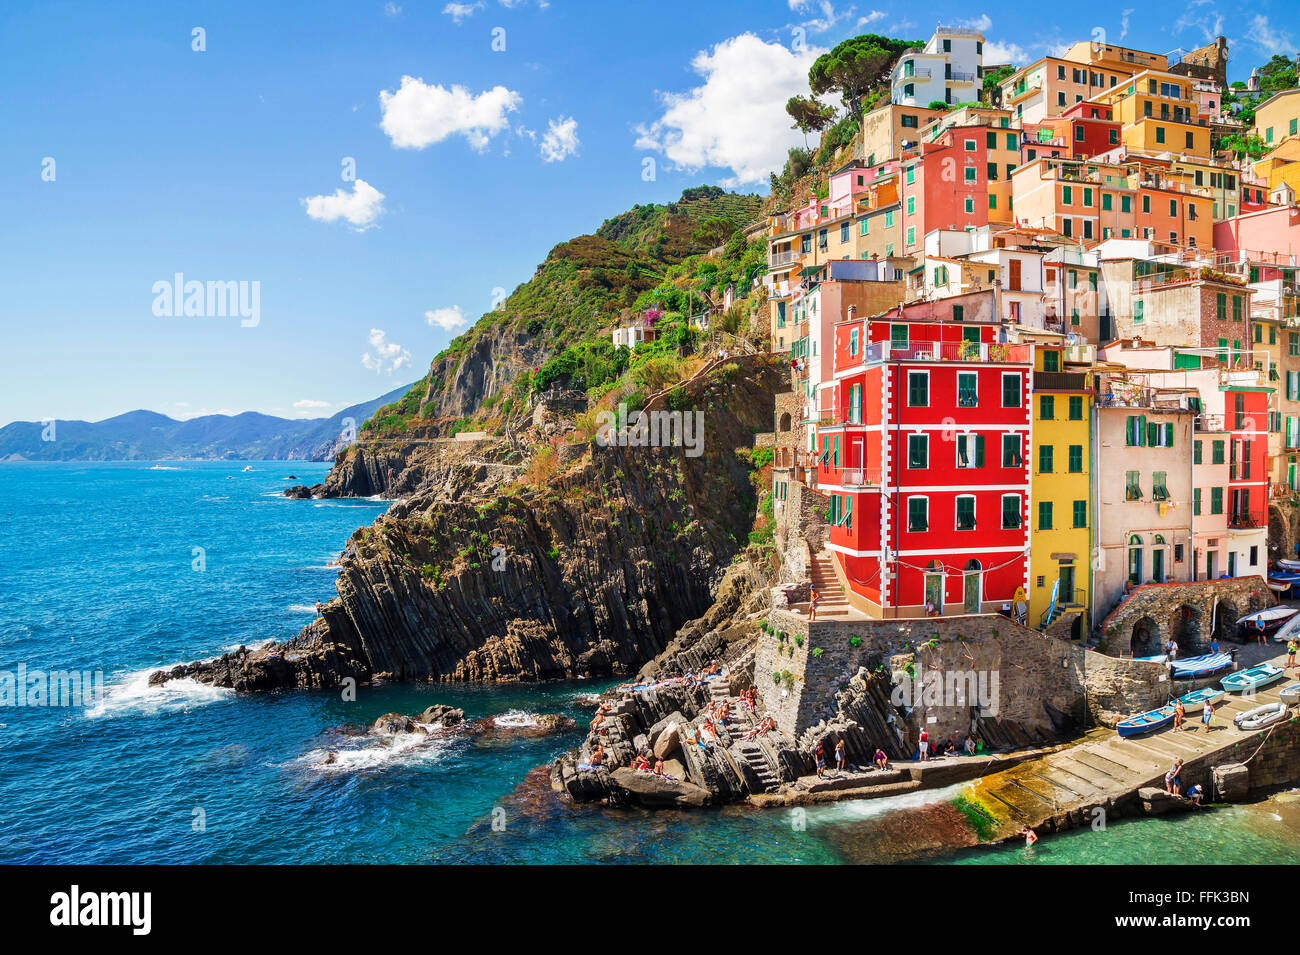 La arquitectura de los edificios en Cinque Terre - Cinco Tierras ,en Riomaggiore village, una de las atracciones más populares en el mundo. Foto de stock